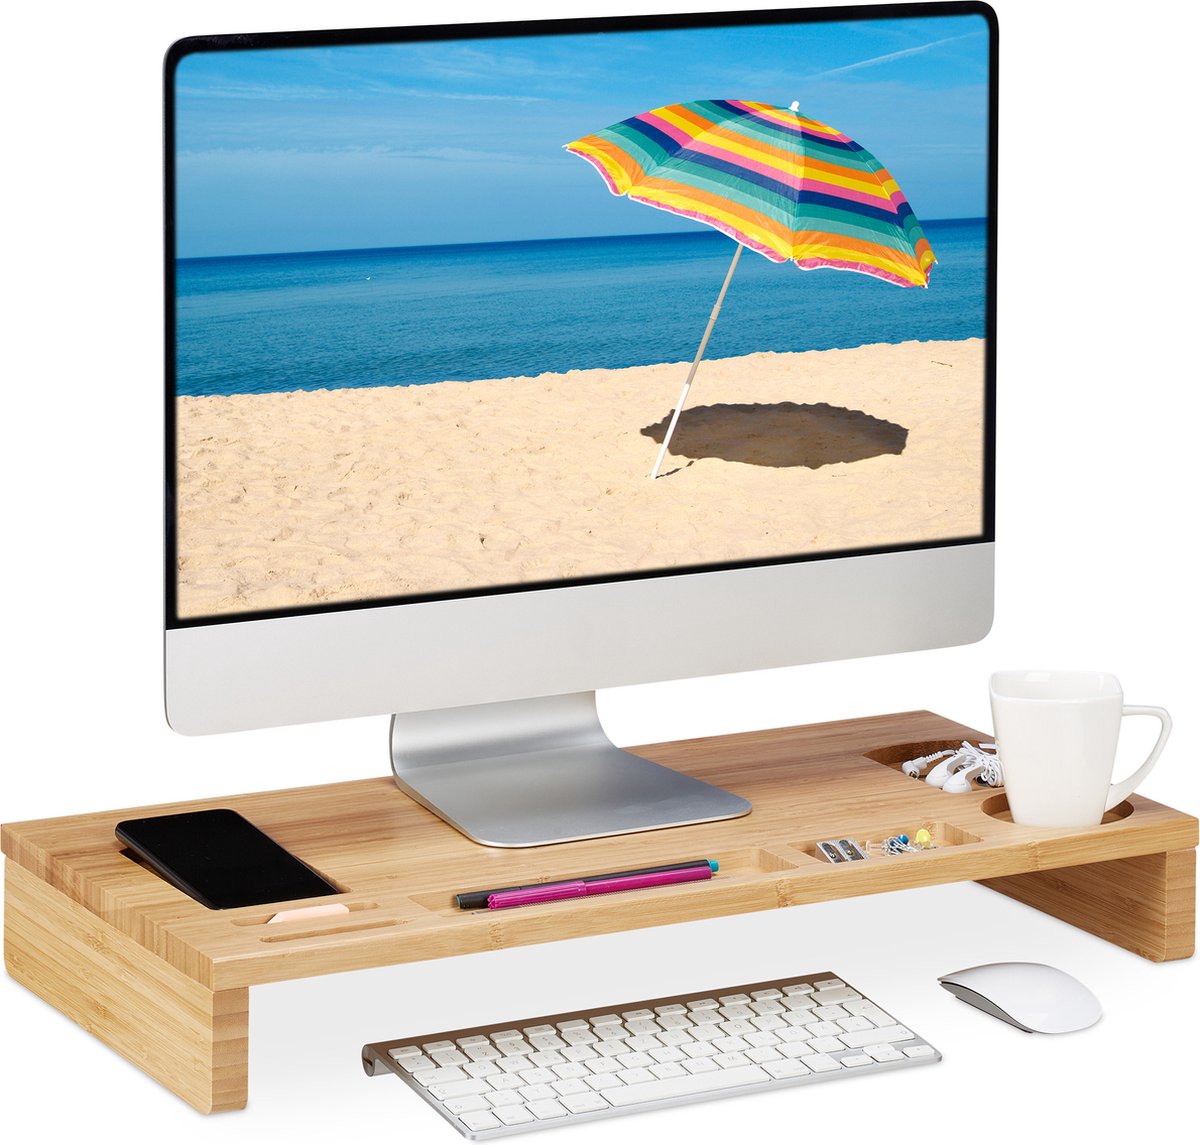 Relaxdays monitorstandaard bamboe - monitorverhoger - beeldschermverhoger voor bureau